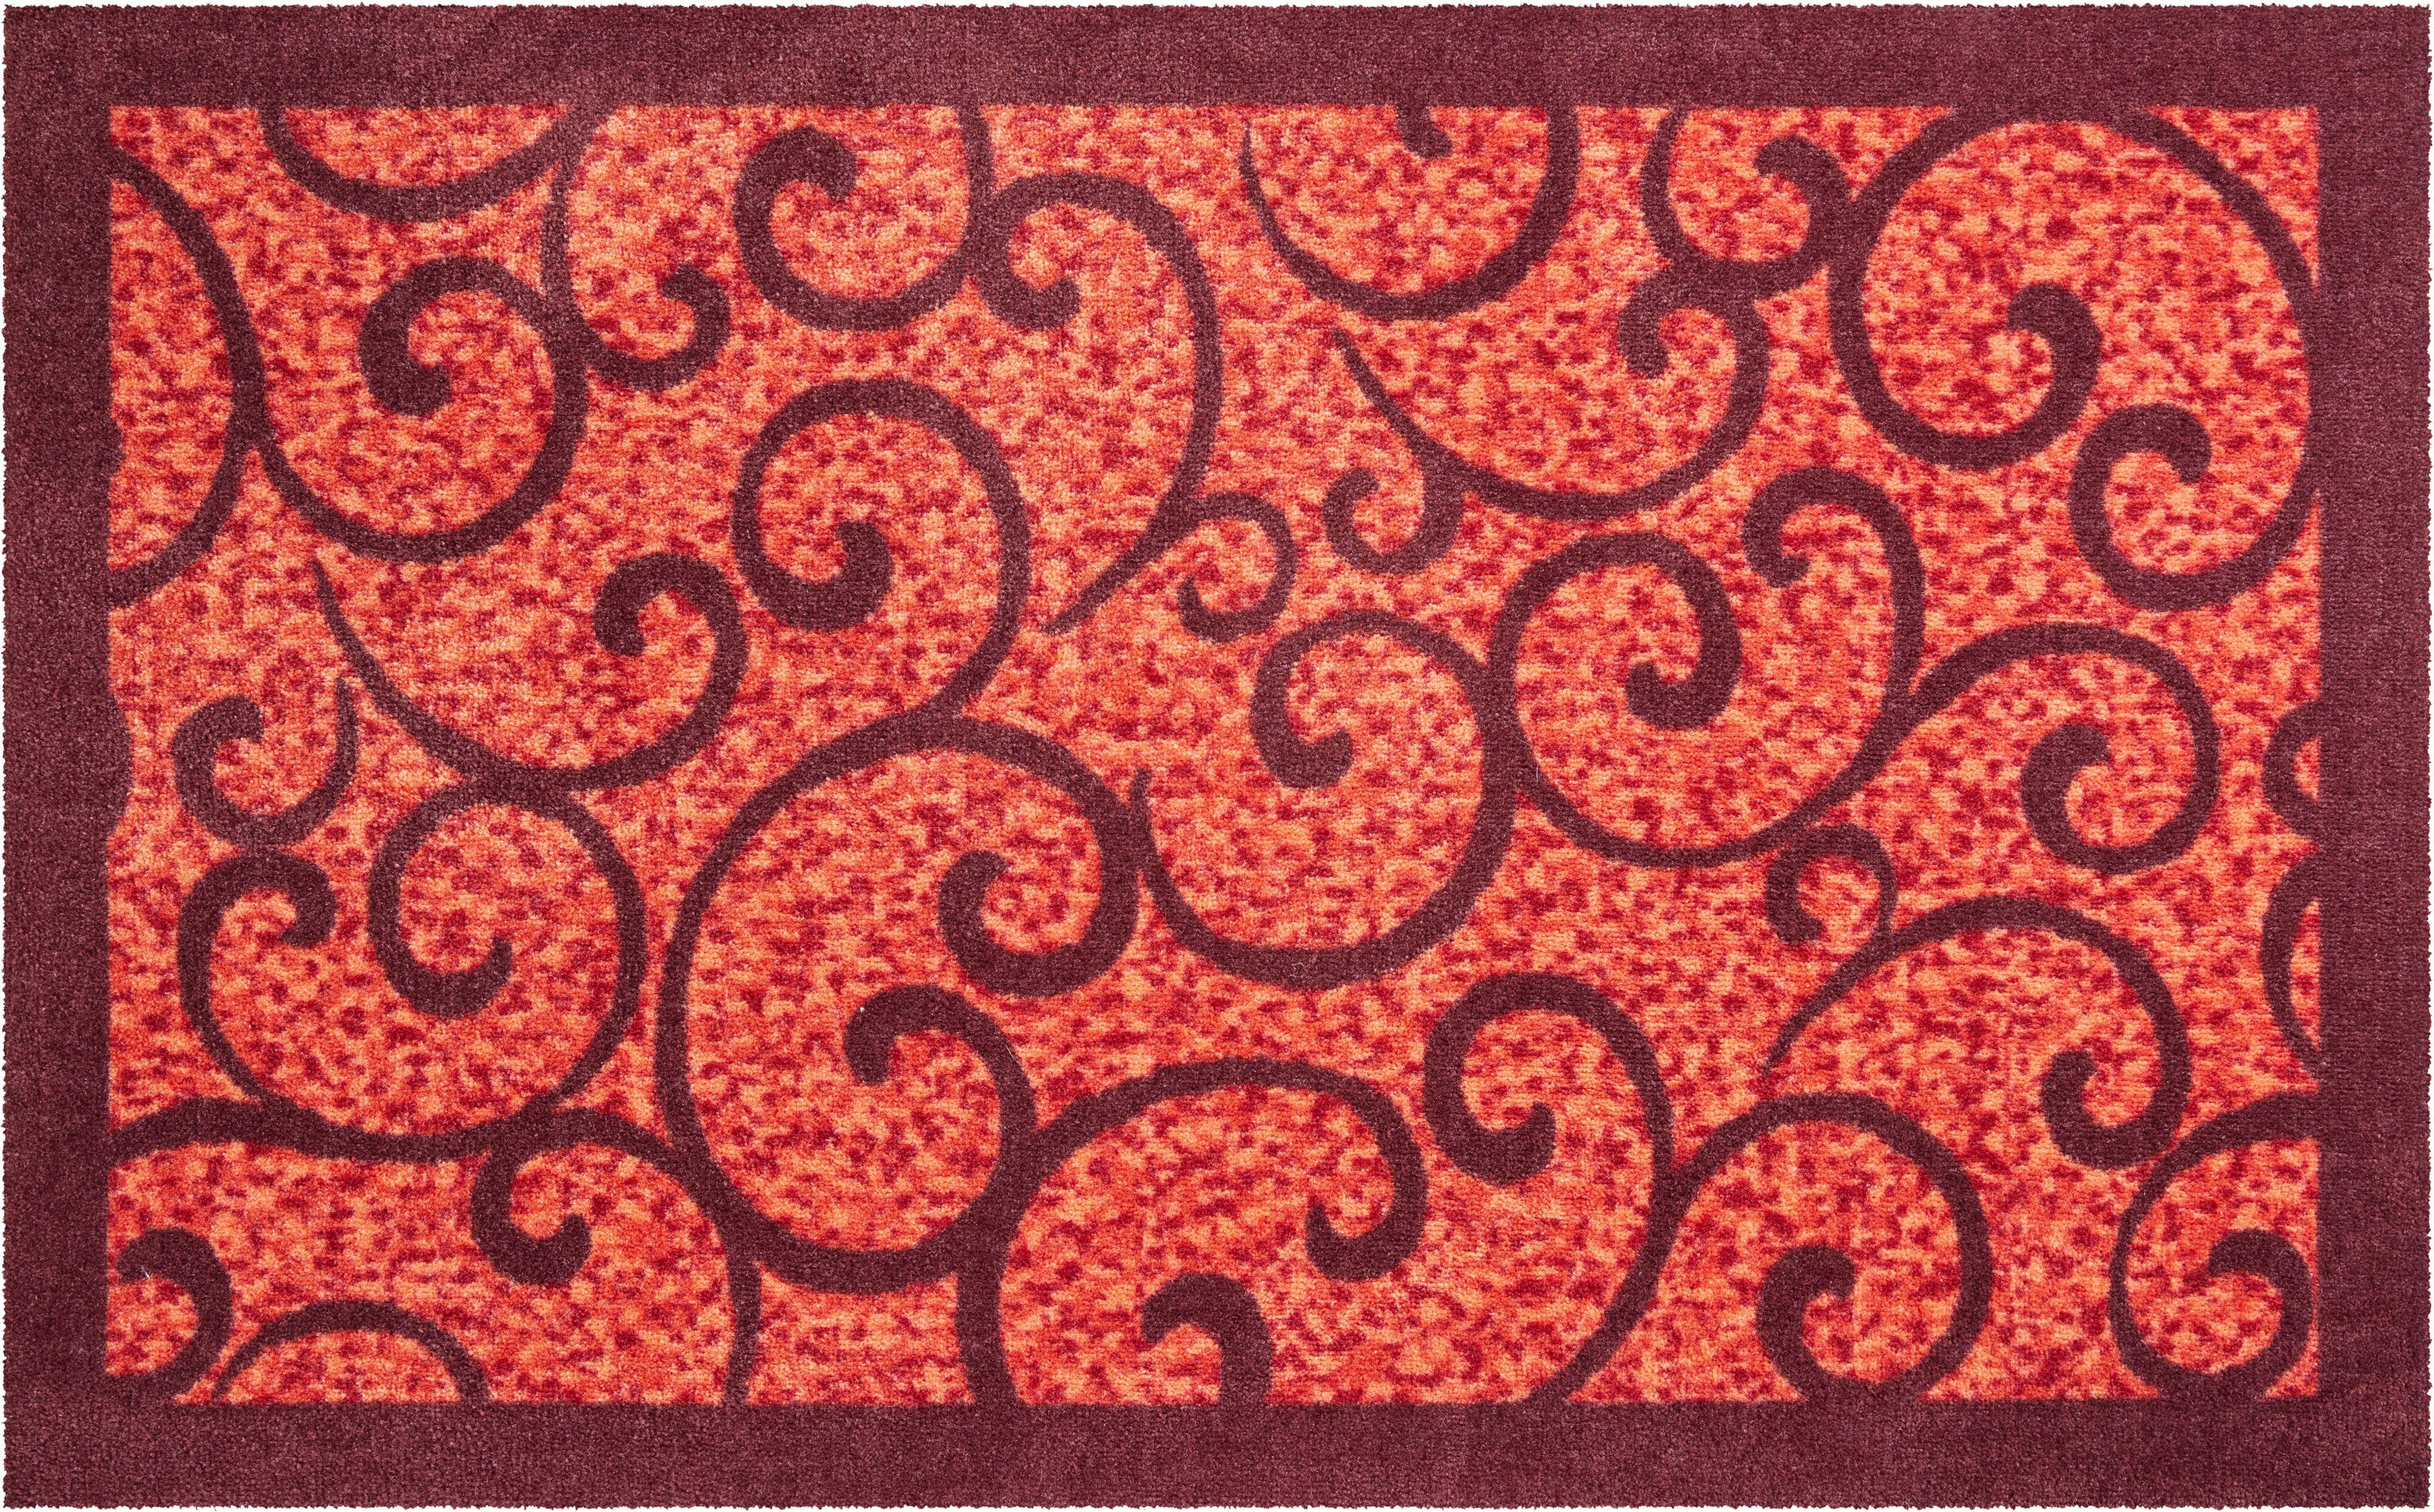 Grund, In- 8 geeignet, mit Design, rot Bordüre verspieltes Outdoor mm, Teppich rechteckig, und Höhe: Teppich Grillo,